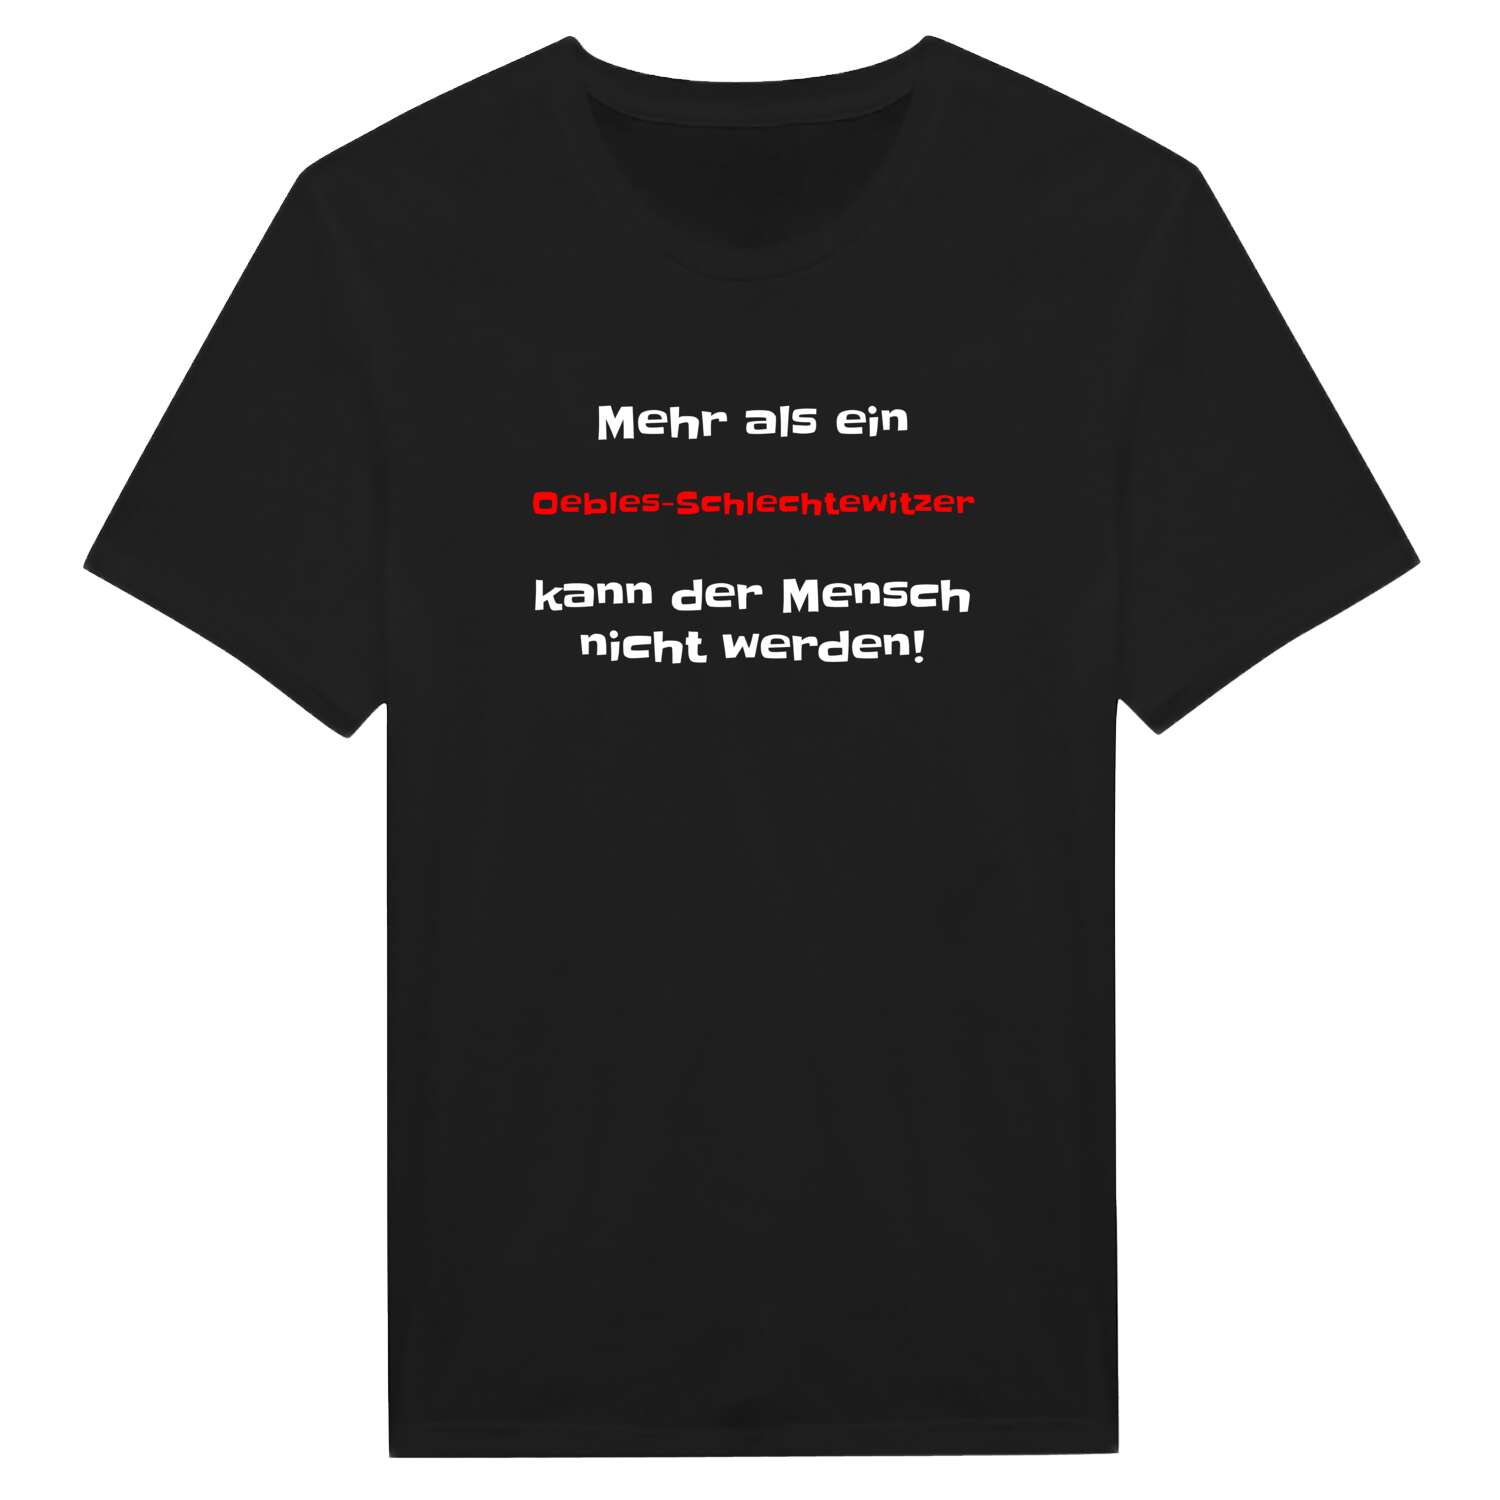 Oebles-Schlechtewitz T-Shirt »Mehr als ein«